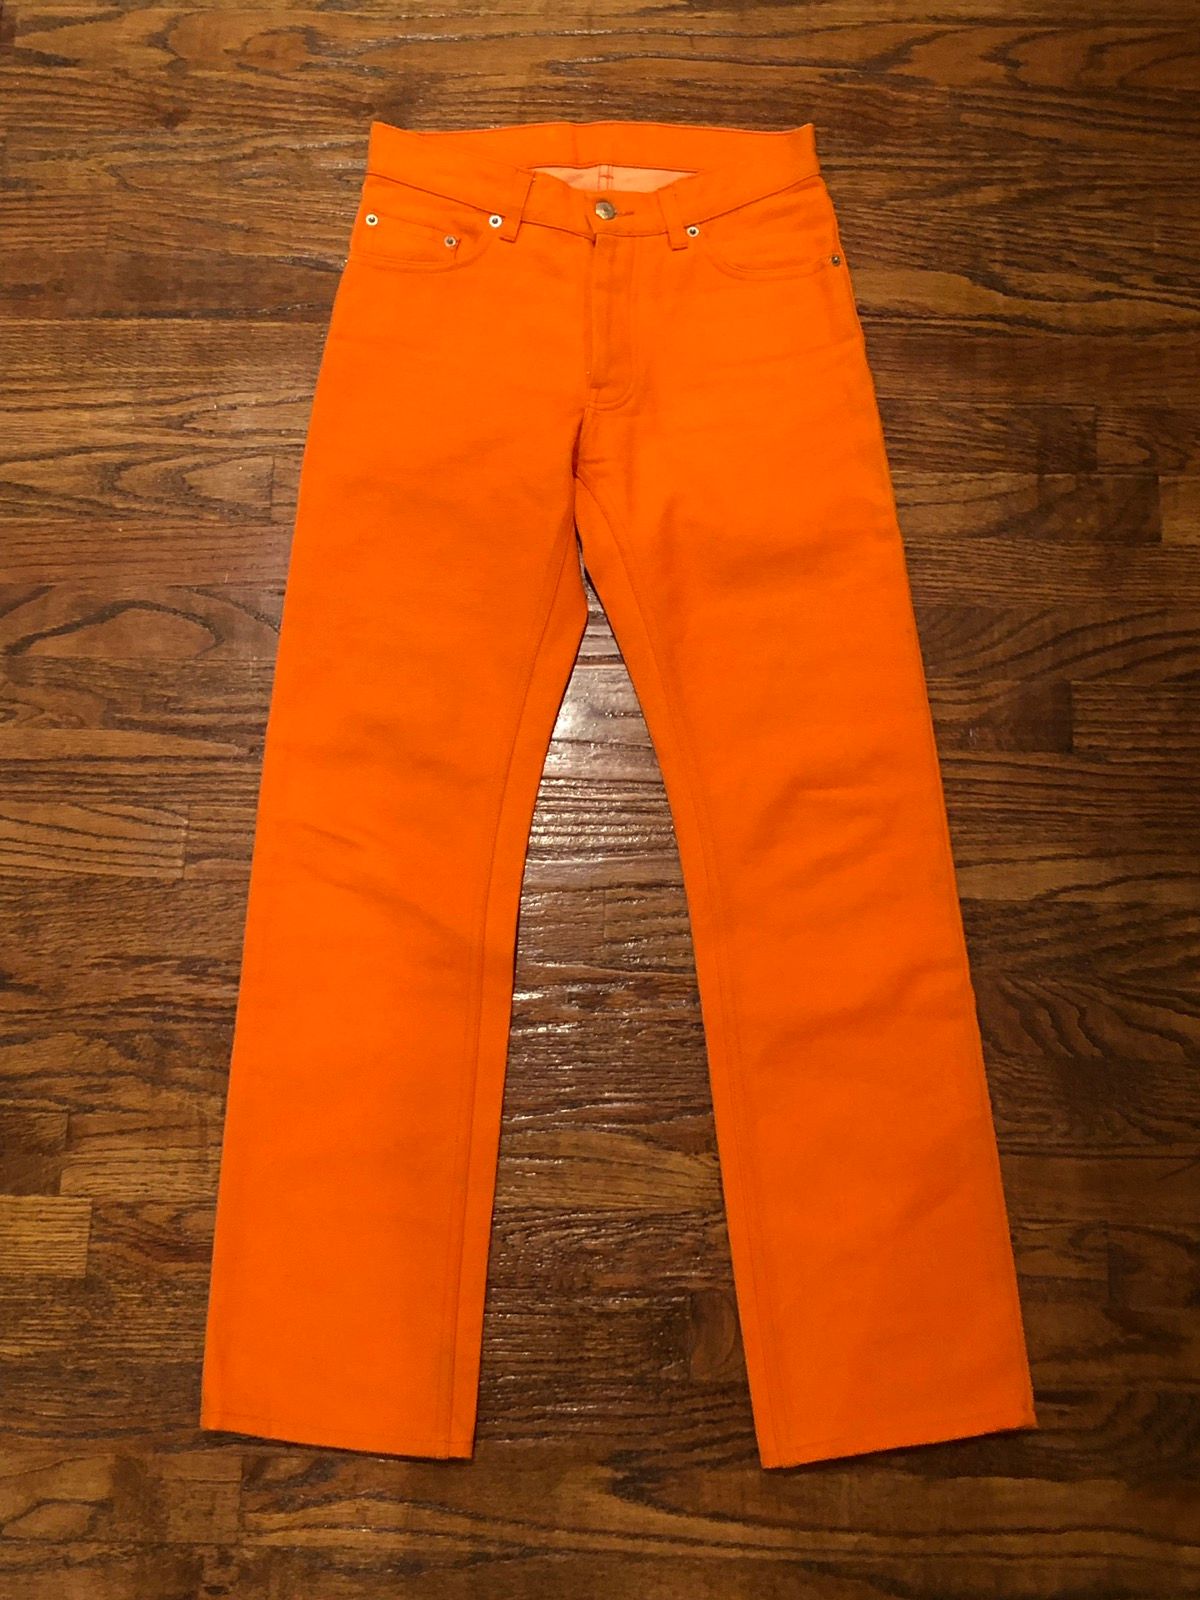 Helmut Lang Helmut Lang Safety Orange Raw Denim Jeans Size US 28 / EU 44 - 1 Preview